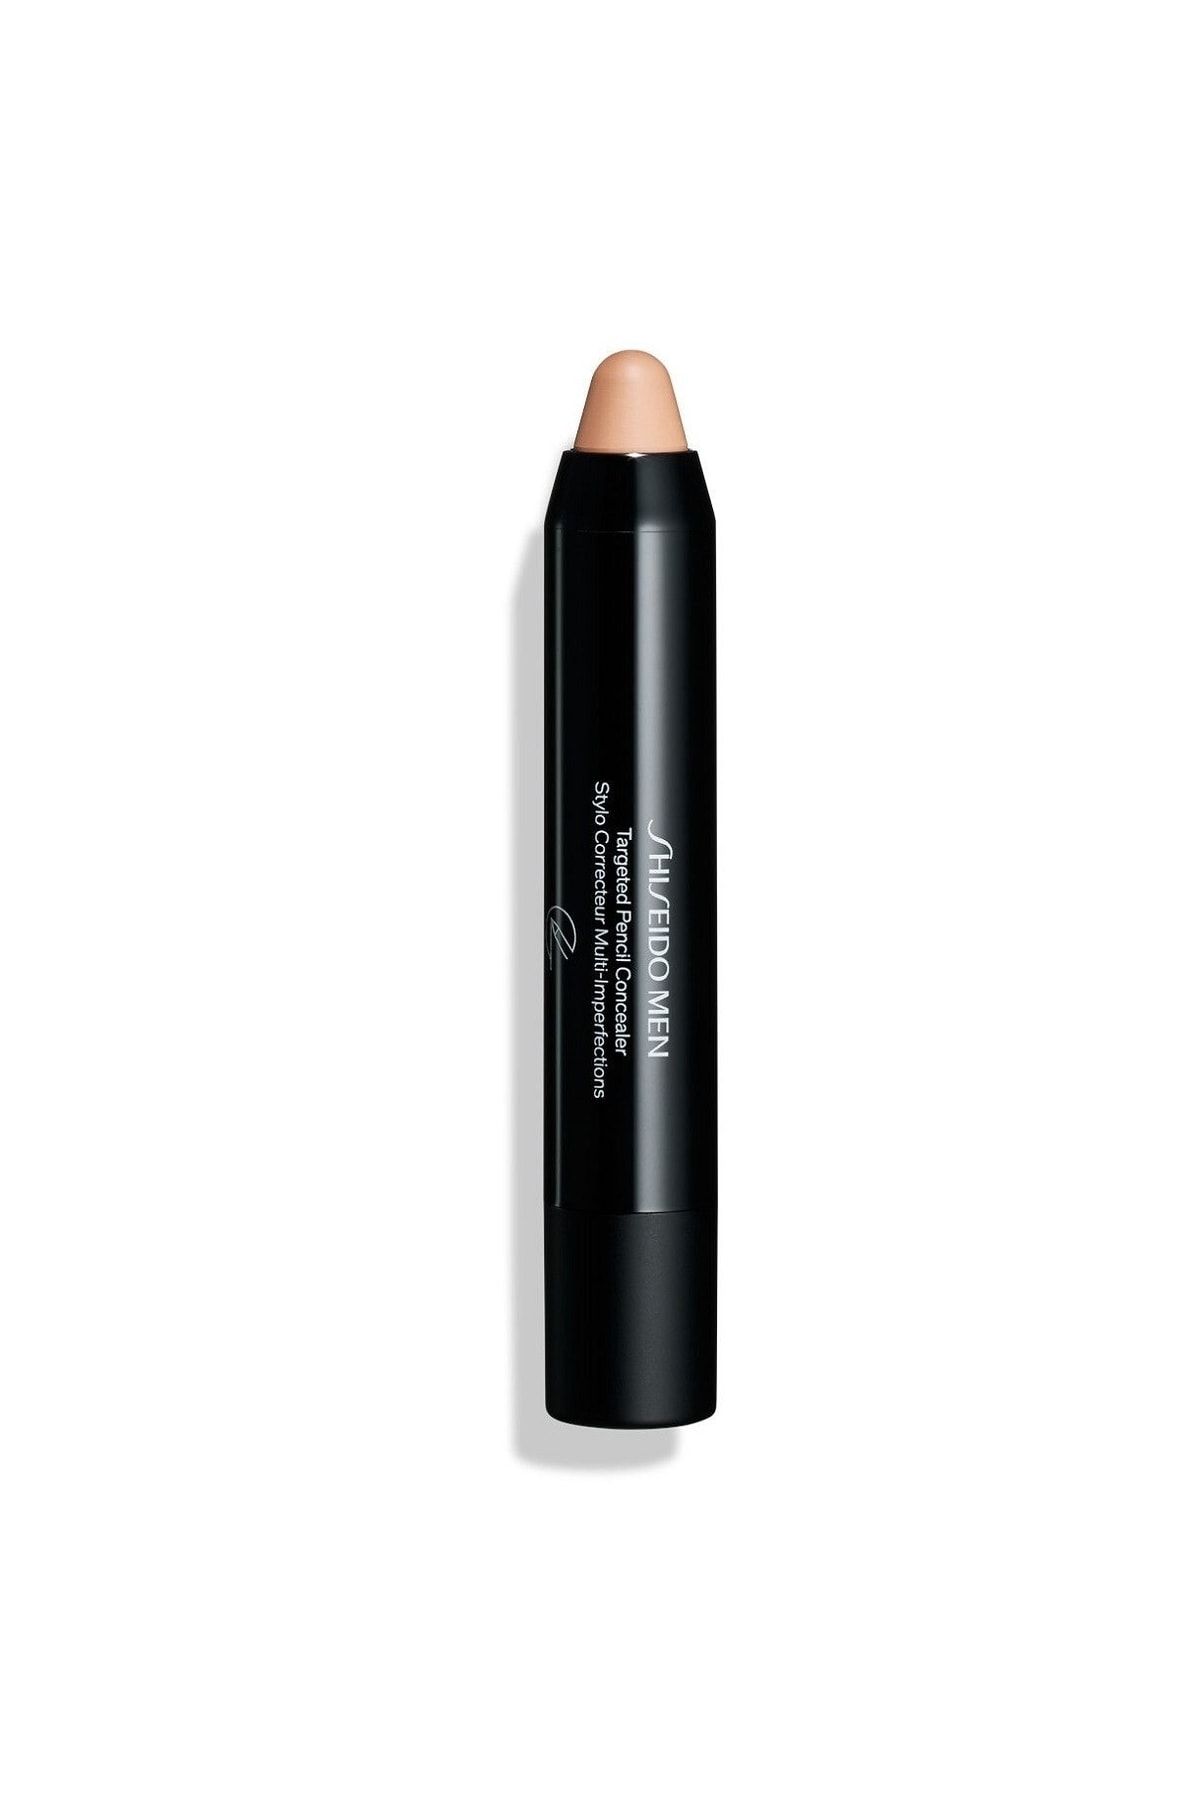 Shiseido مخفی کننده مدادی مردانه با هدف کاهش ظاهر عیوب پوست